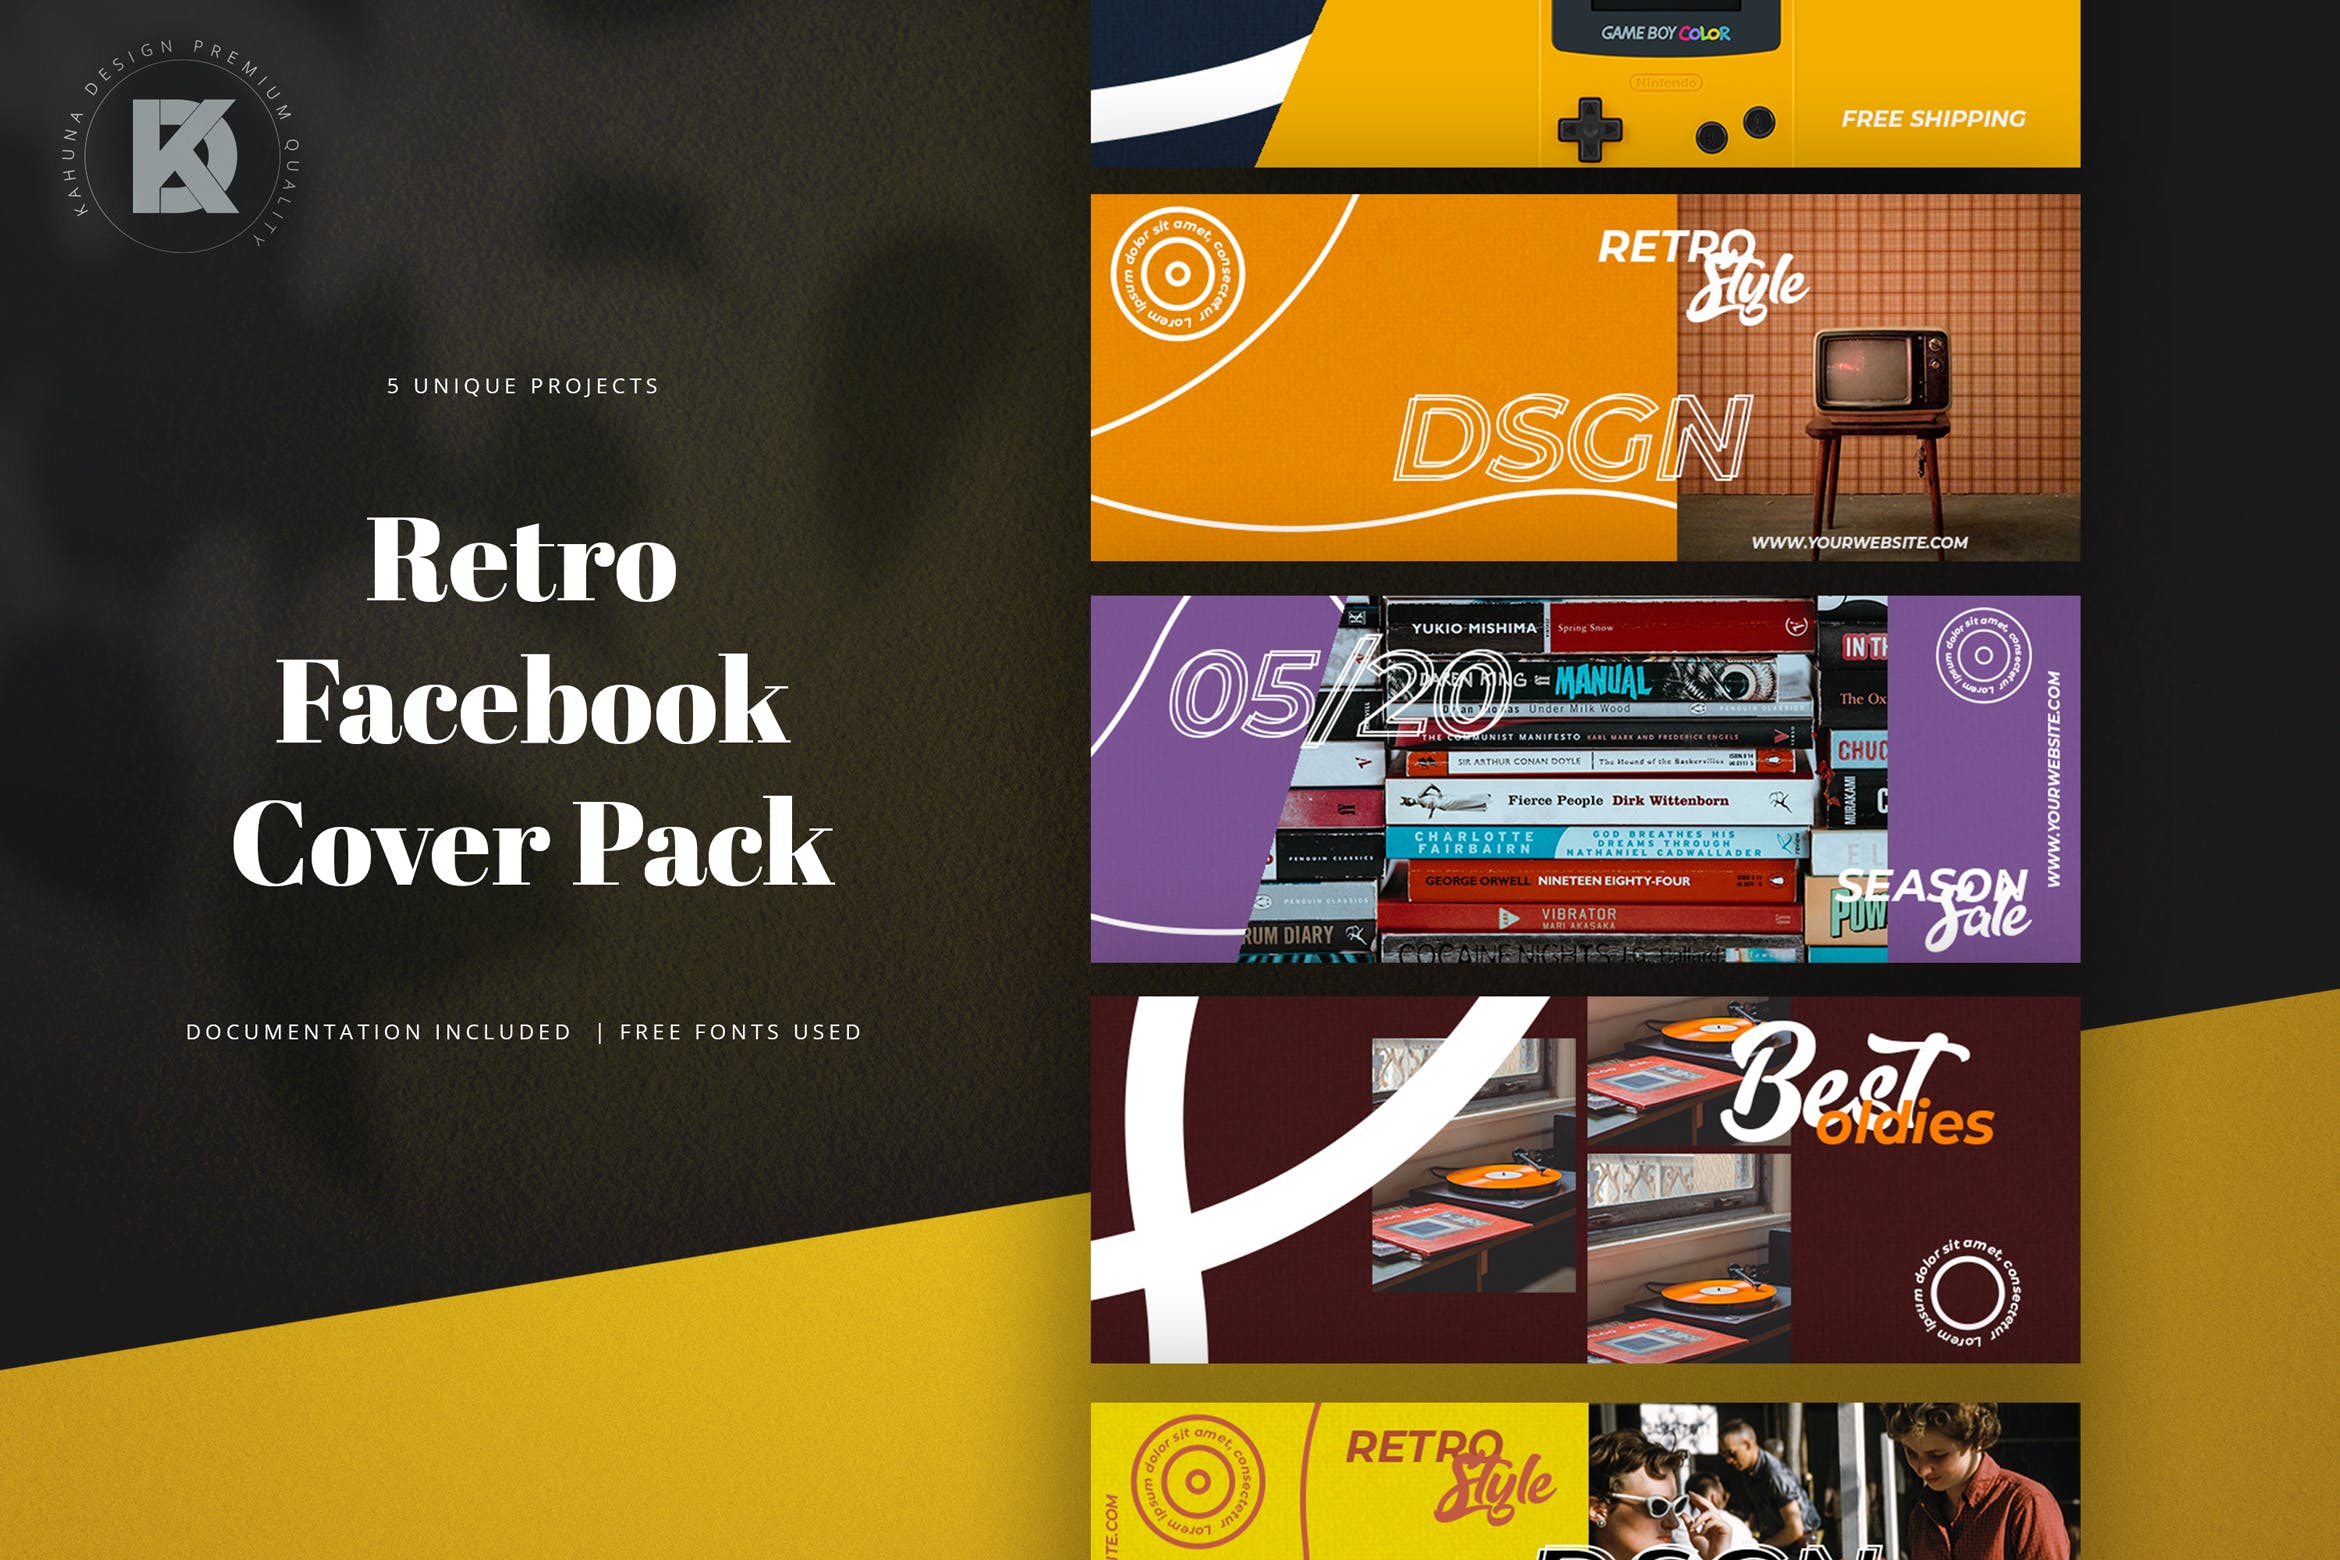 复古风格Facebook主页封面设计模板素材库精选 Retro Facebook Cover Pack插图